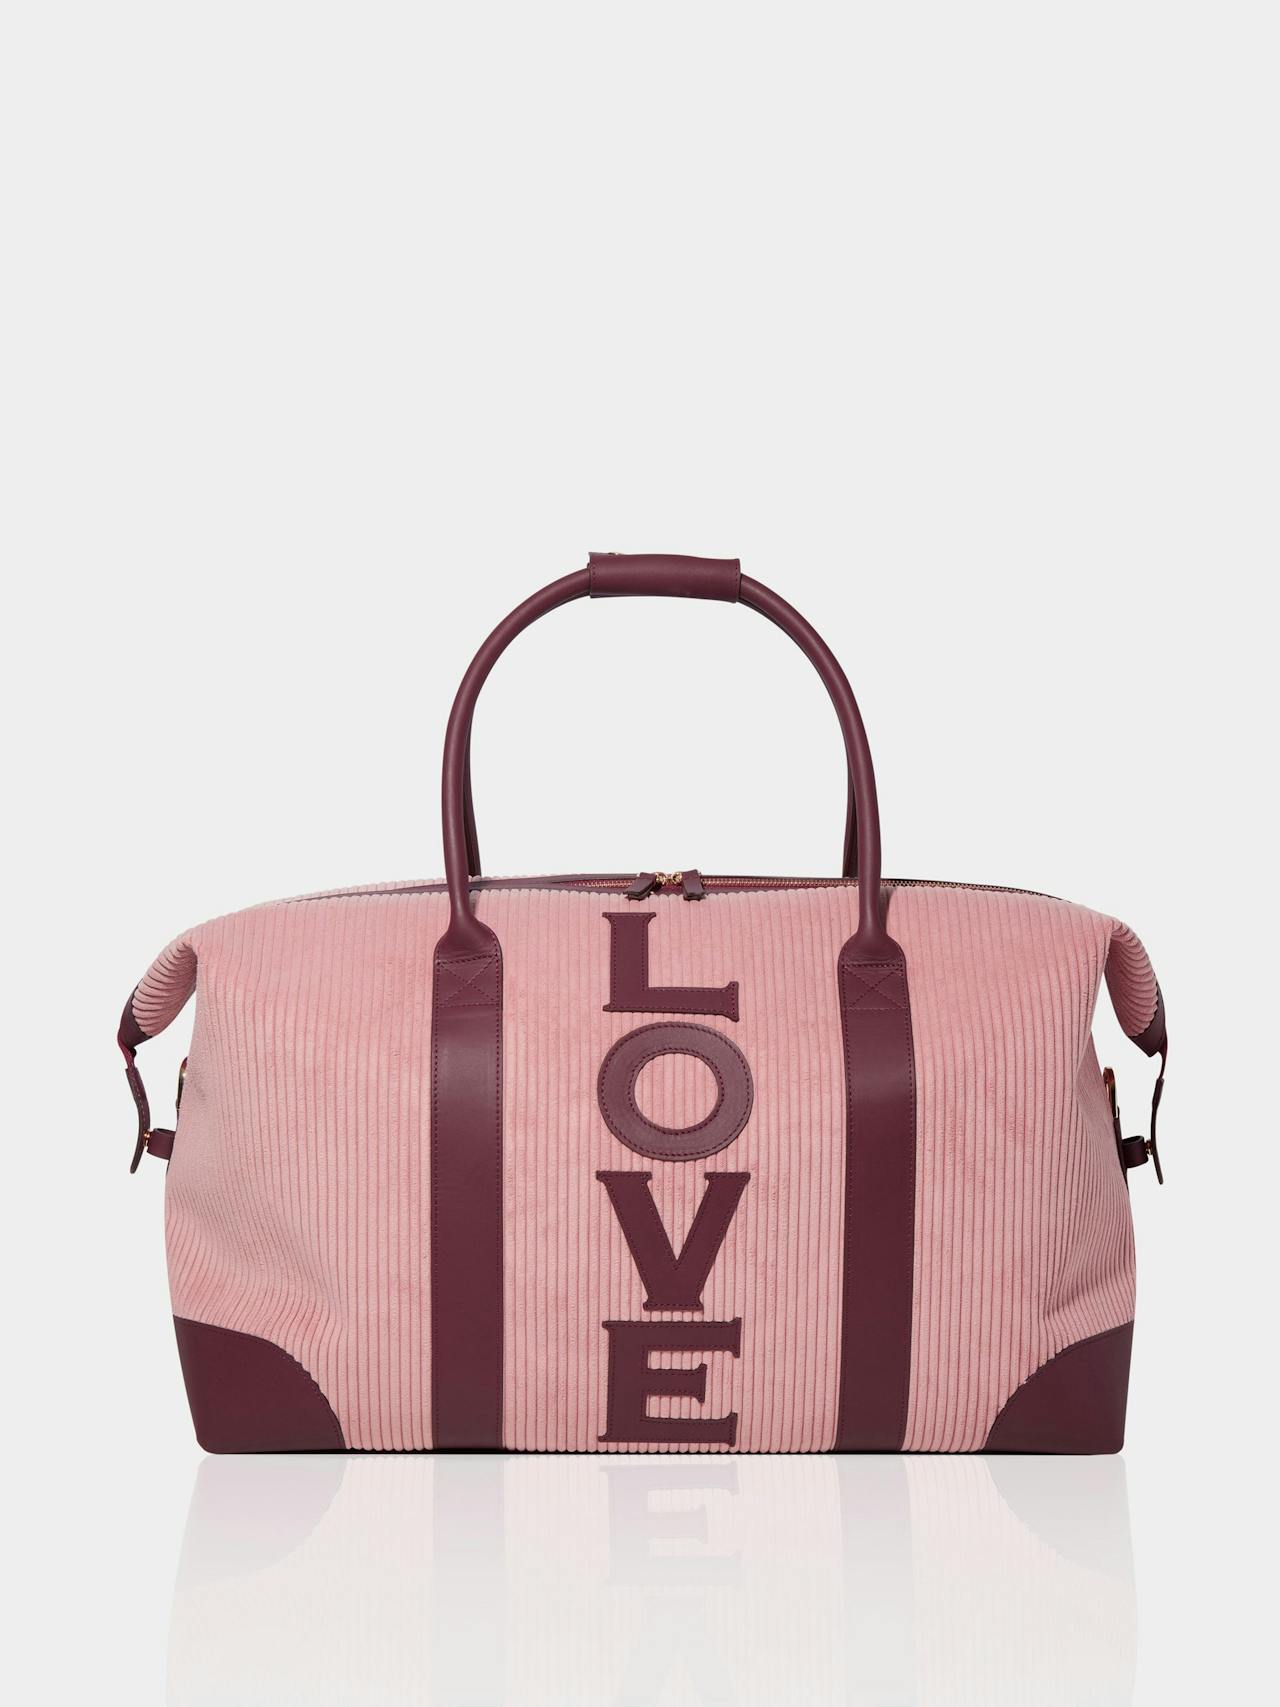 The love weekend bag